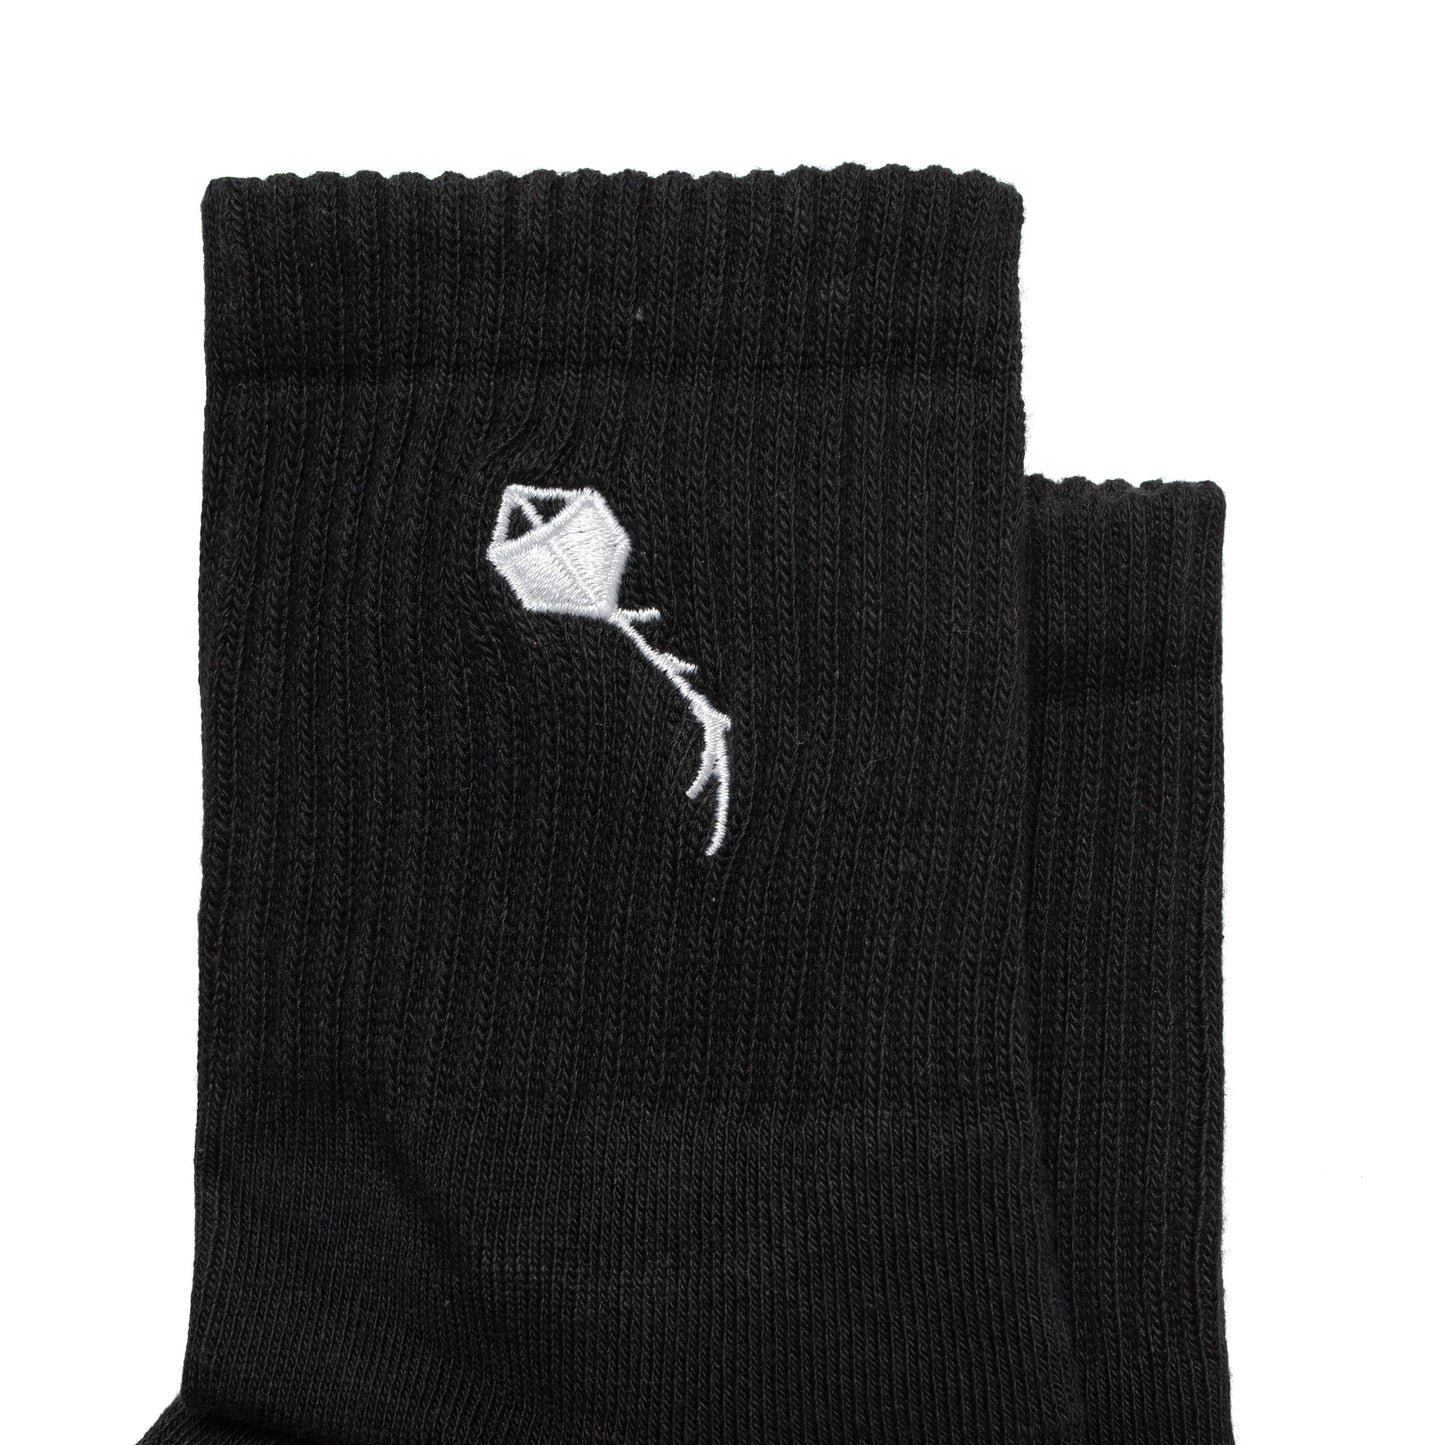 Ribbed Socks "Pipa" Black